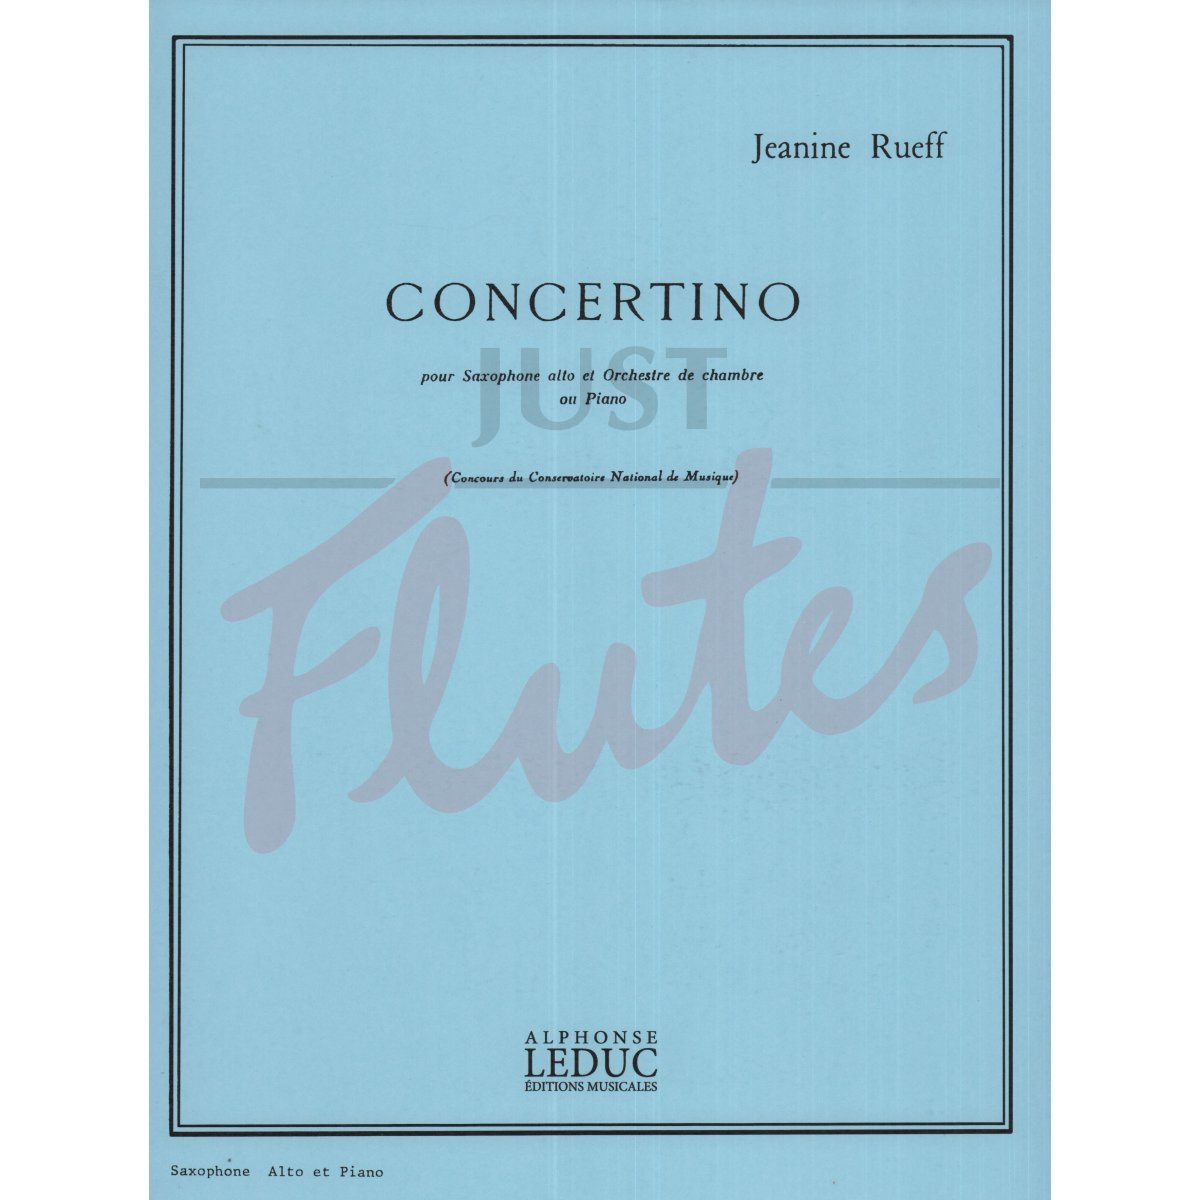 Concertino for Alto Saxophone and Piano